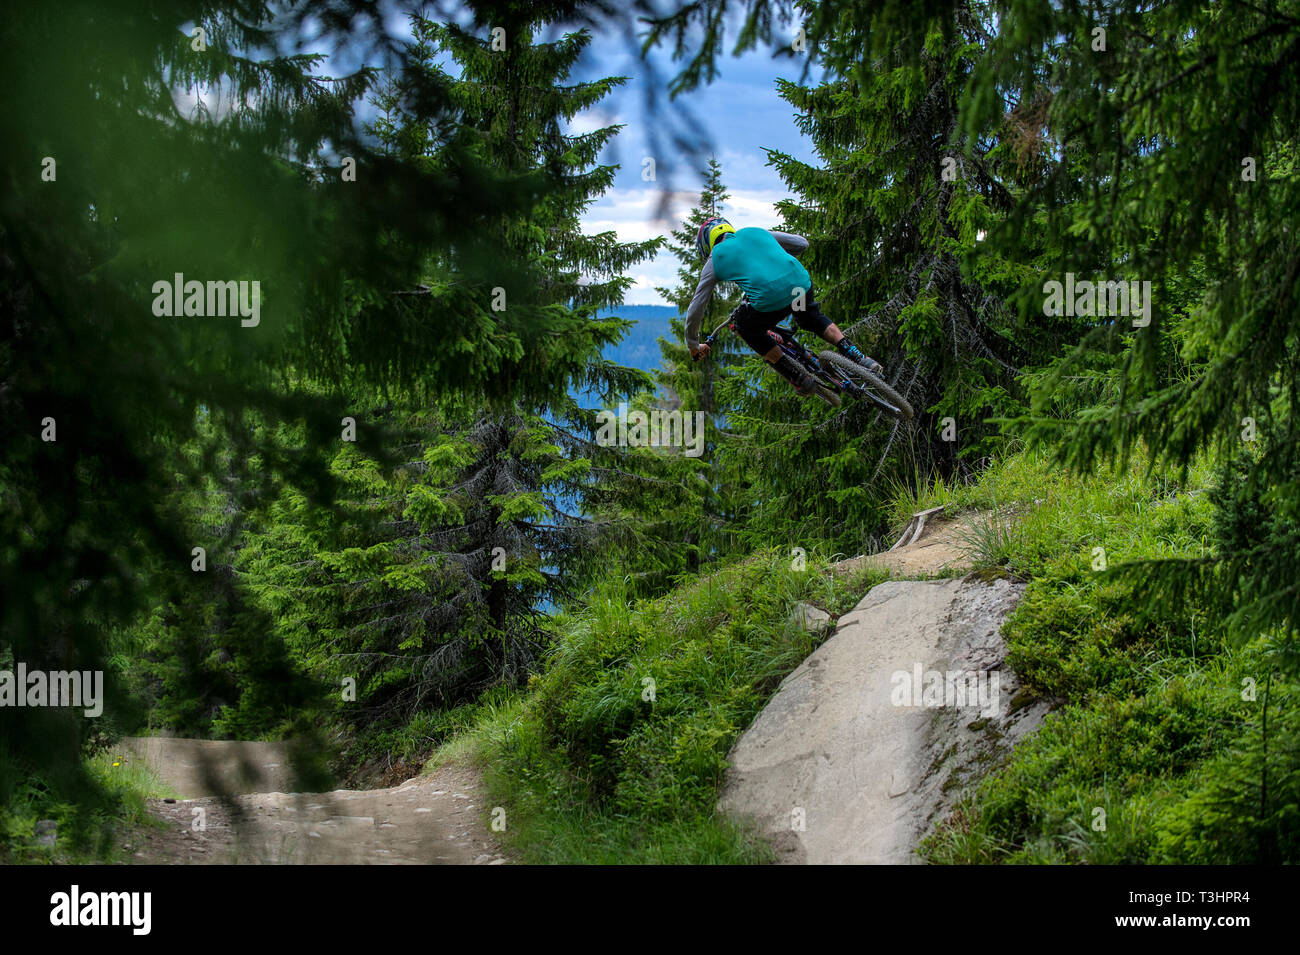 Un uomo in sella ad una mountain bike colpisce un salto nella Hafjell Bike Park in Norvegia. Foto Stock